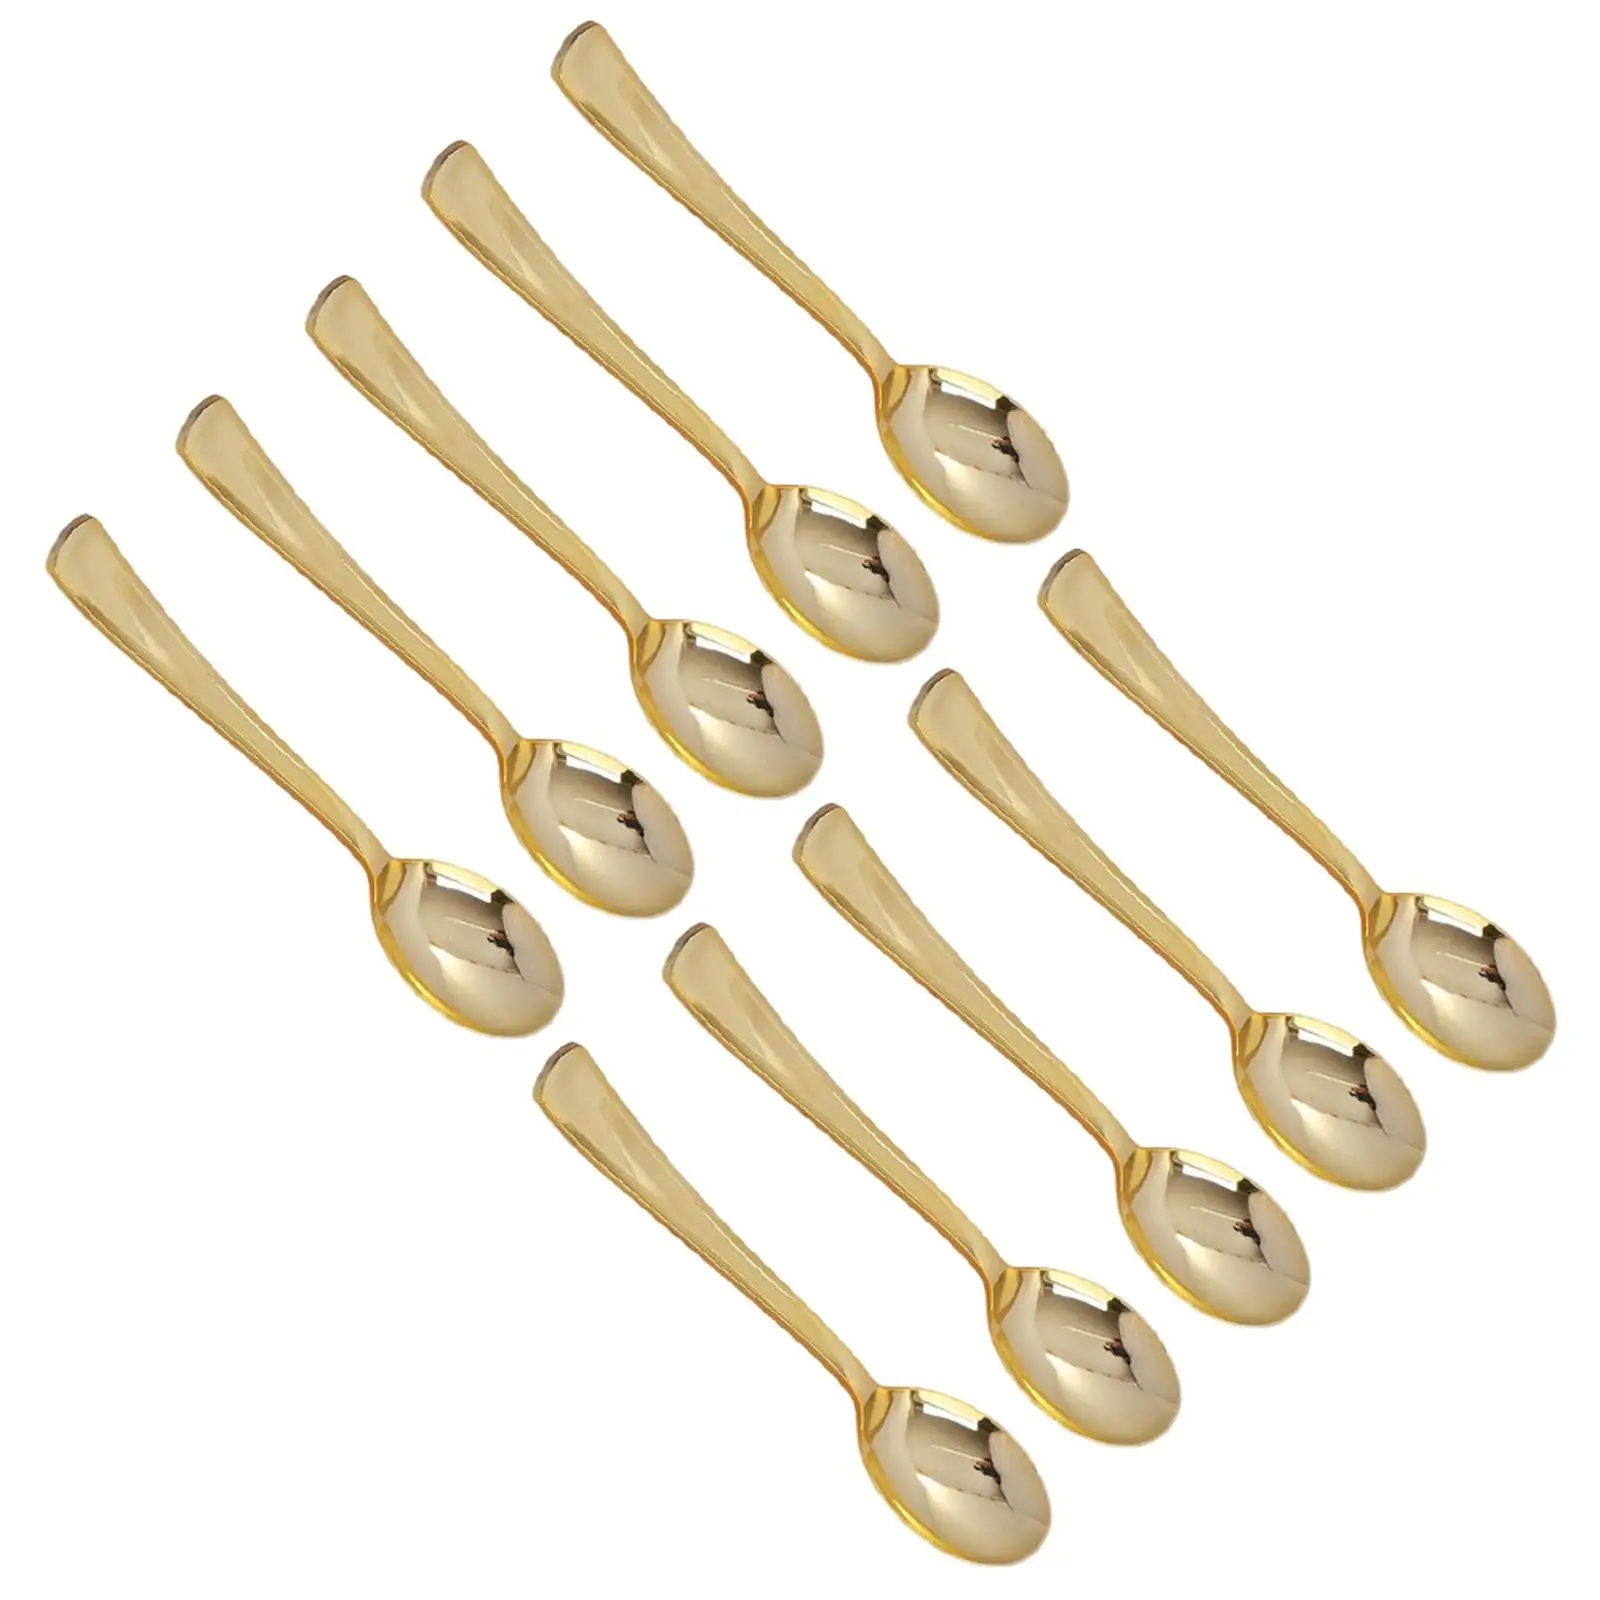  Flatware Sturdy Utensil Cutlery Kit for Dinners Restaurant Family